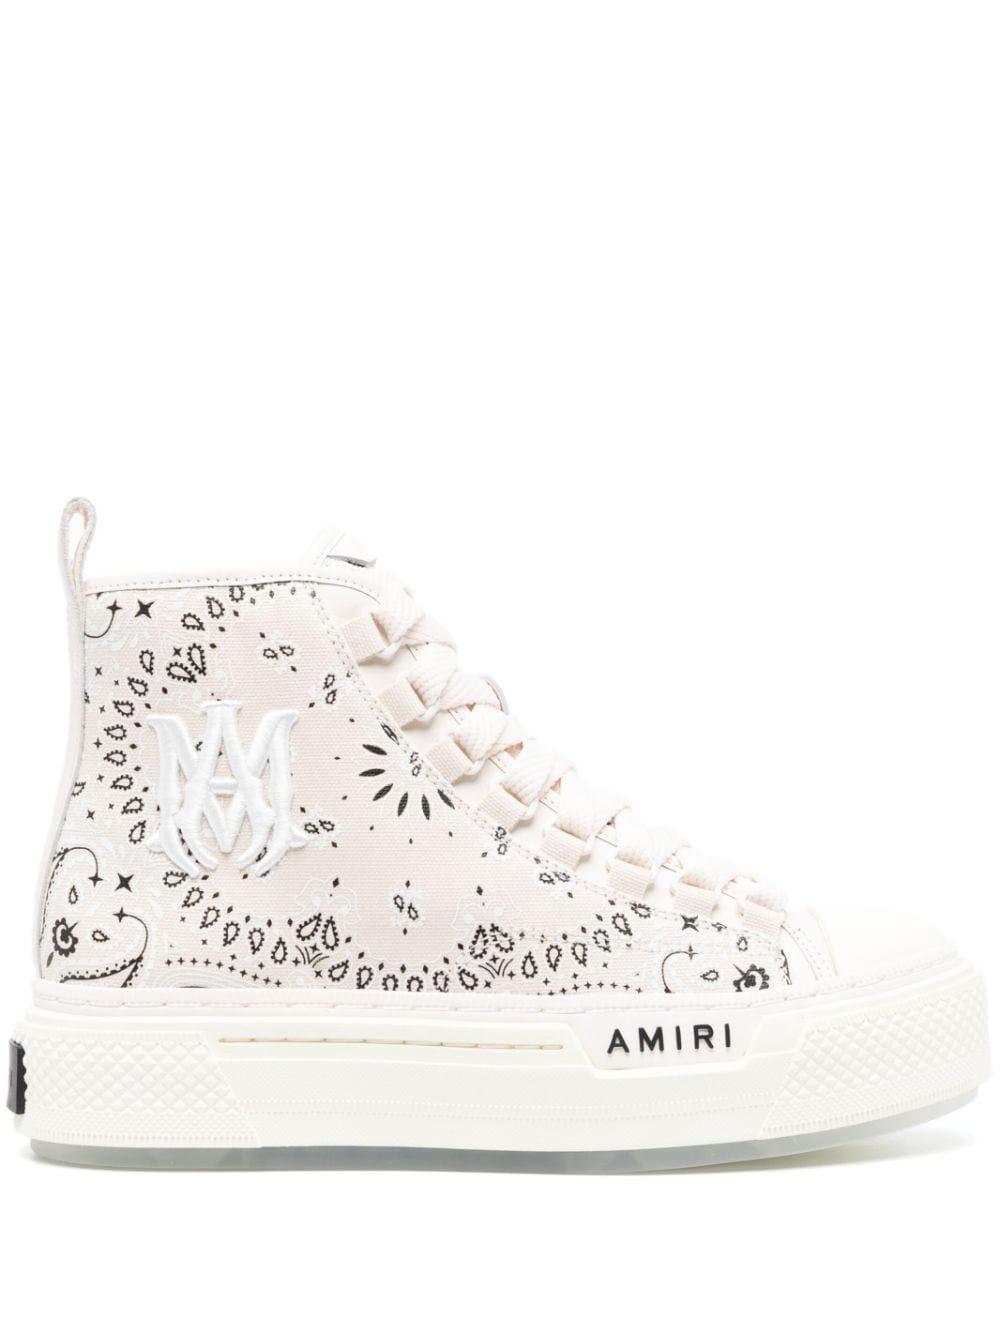 AMIRI MA-1 Low Top Sneakers - Farfetch